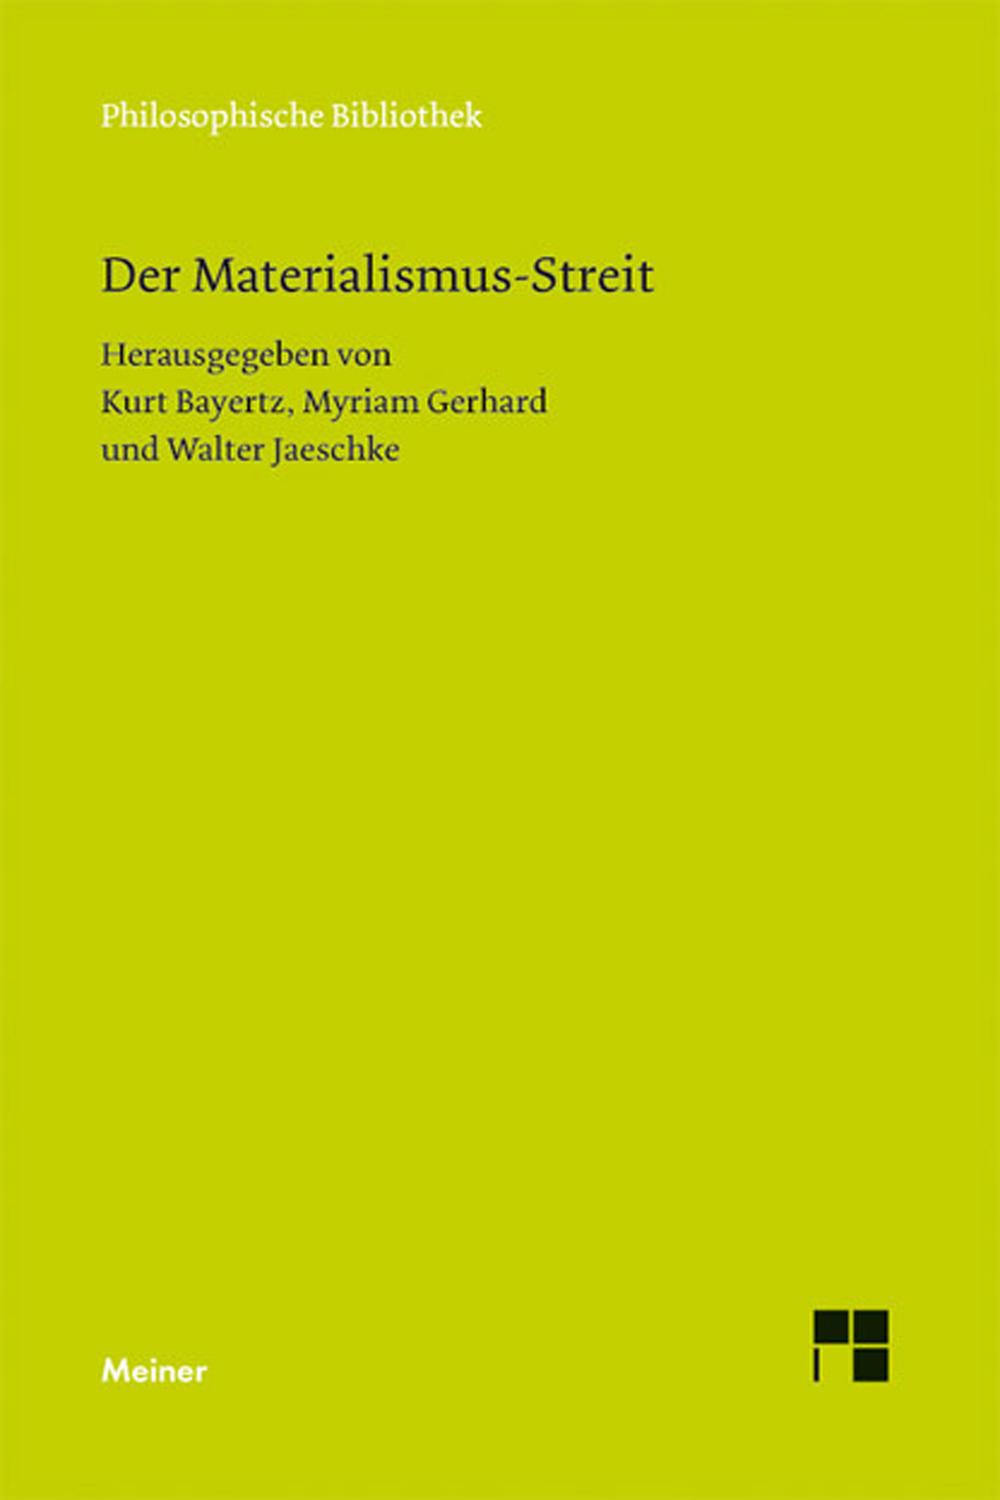 Der Materialismus-Streit - Kurt Bayertz, Myriam Gerhard, Walter Jaeschke